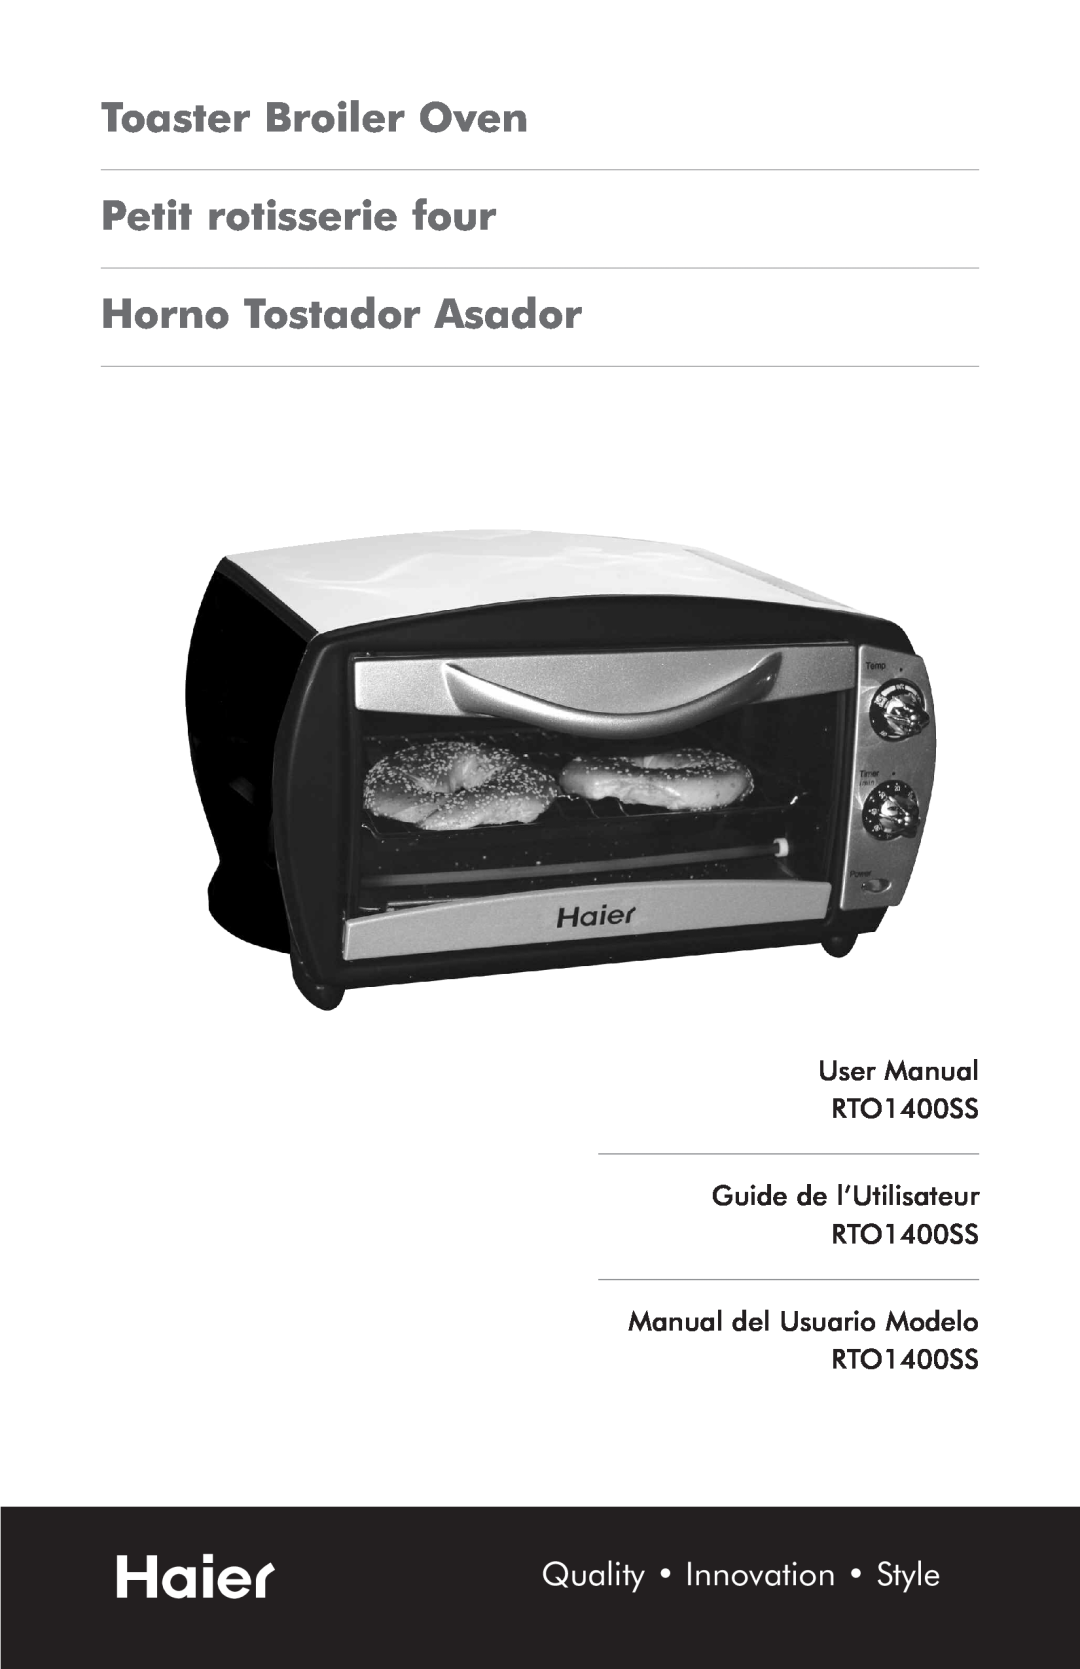 Haier RTO1400SS user manual Toaster Broiler Oven Petit rotisserie four, Horno Tostador Asador 